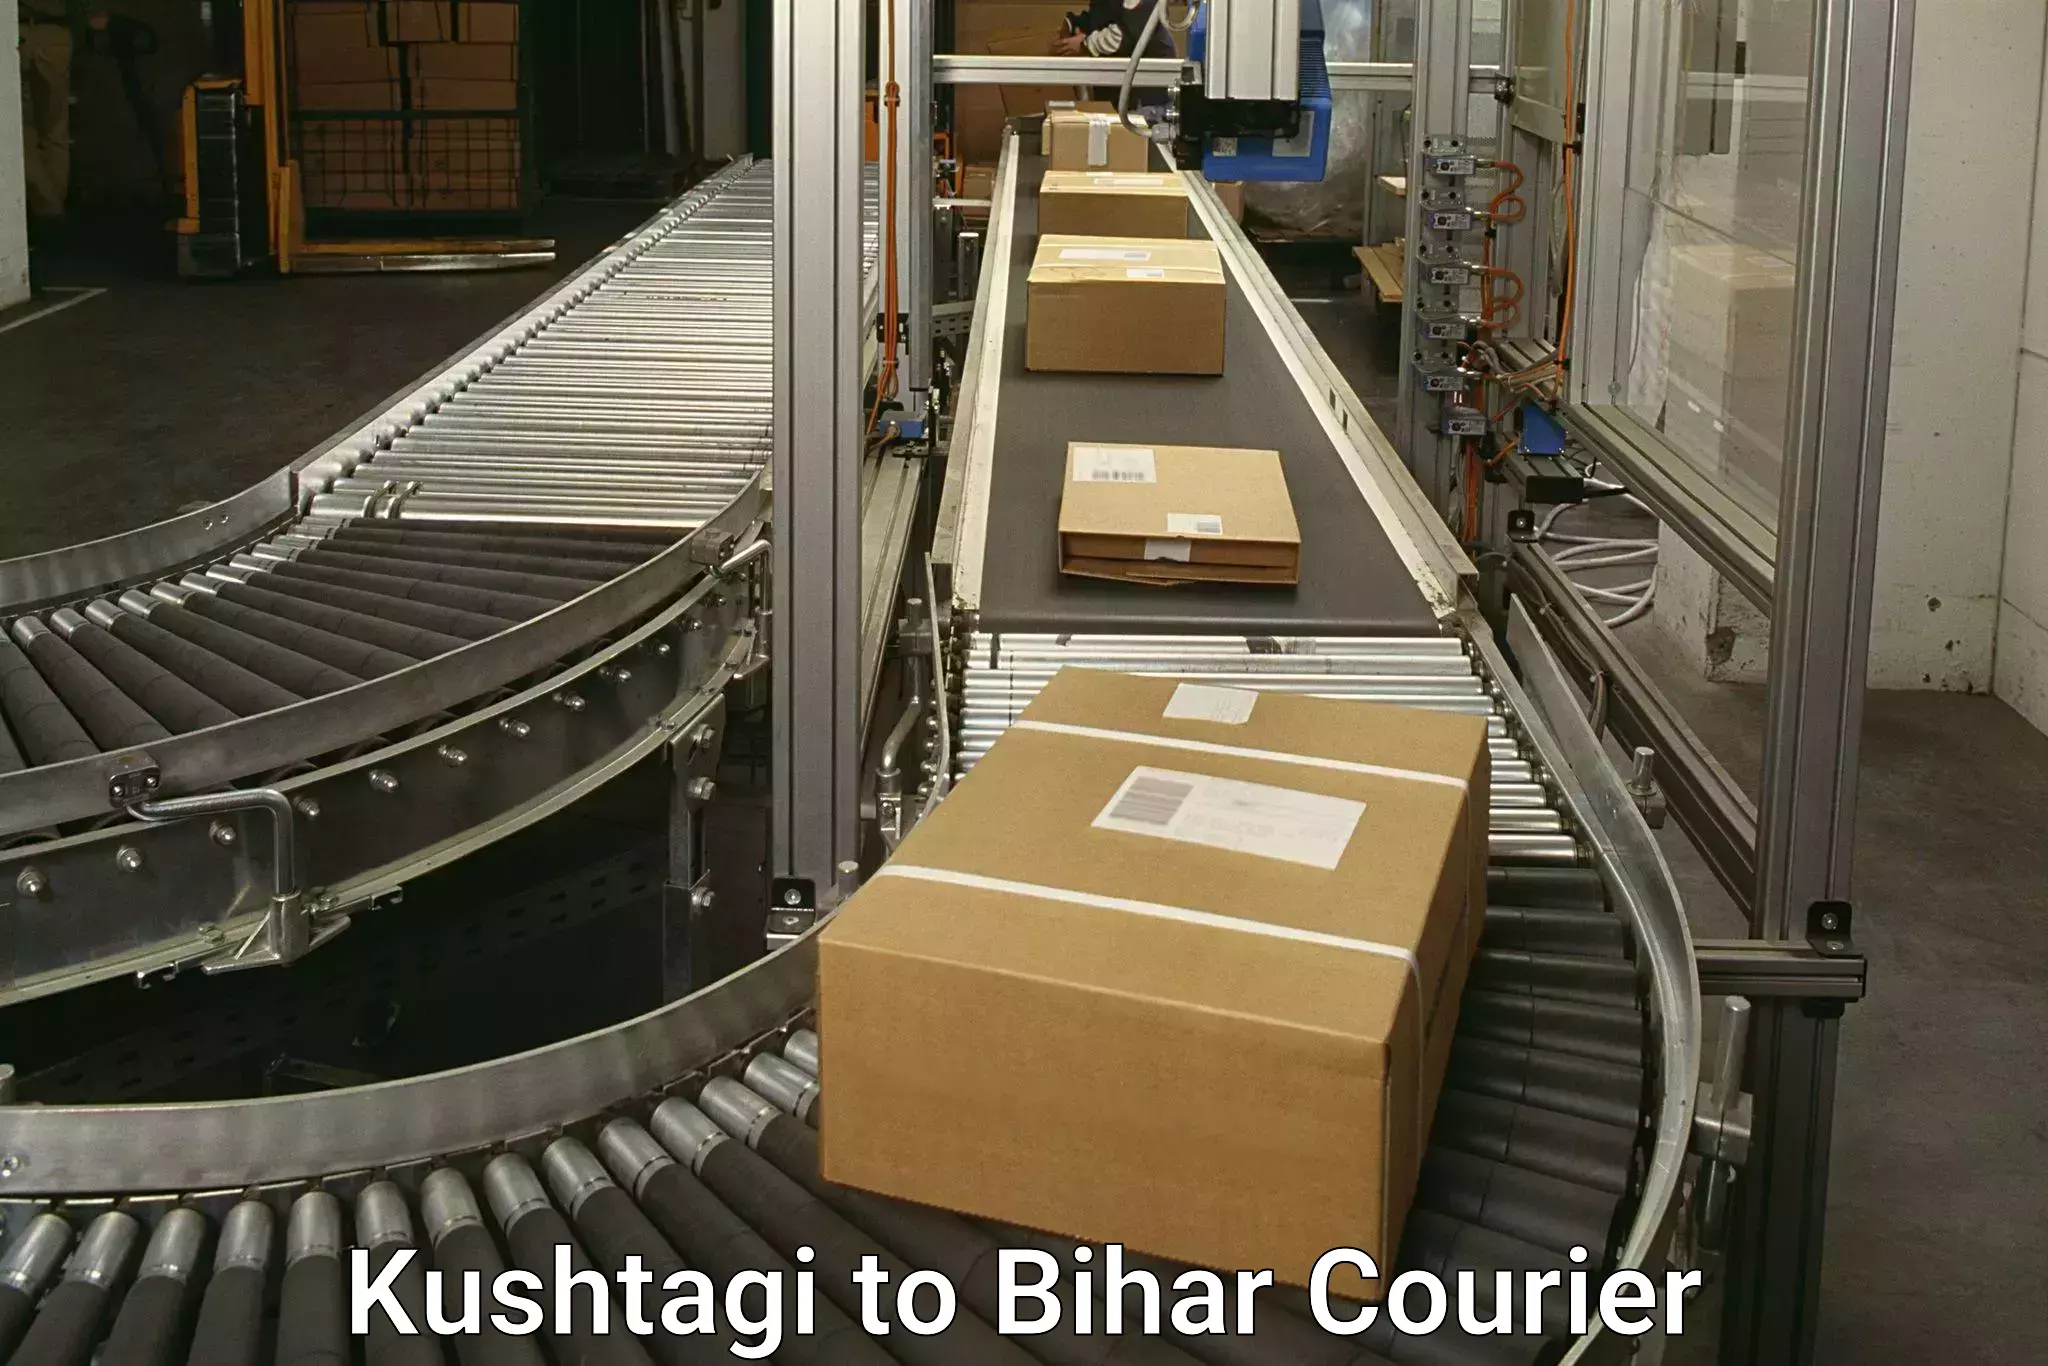 Online shipping calculator Kushtagi to Katoria